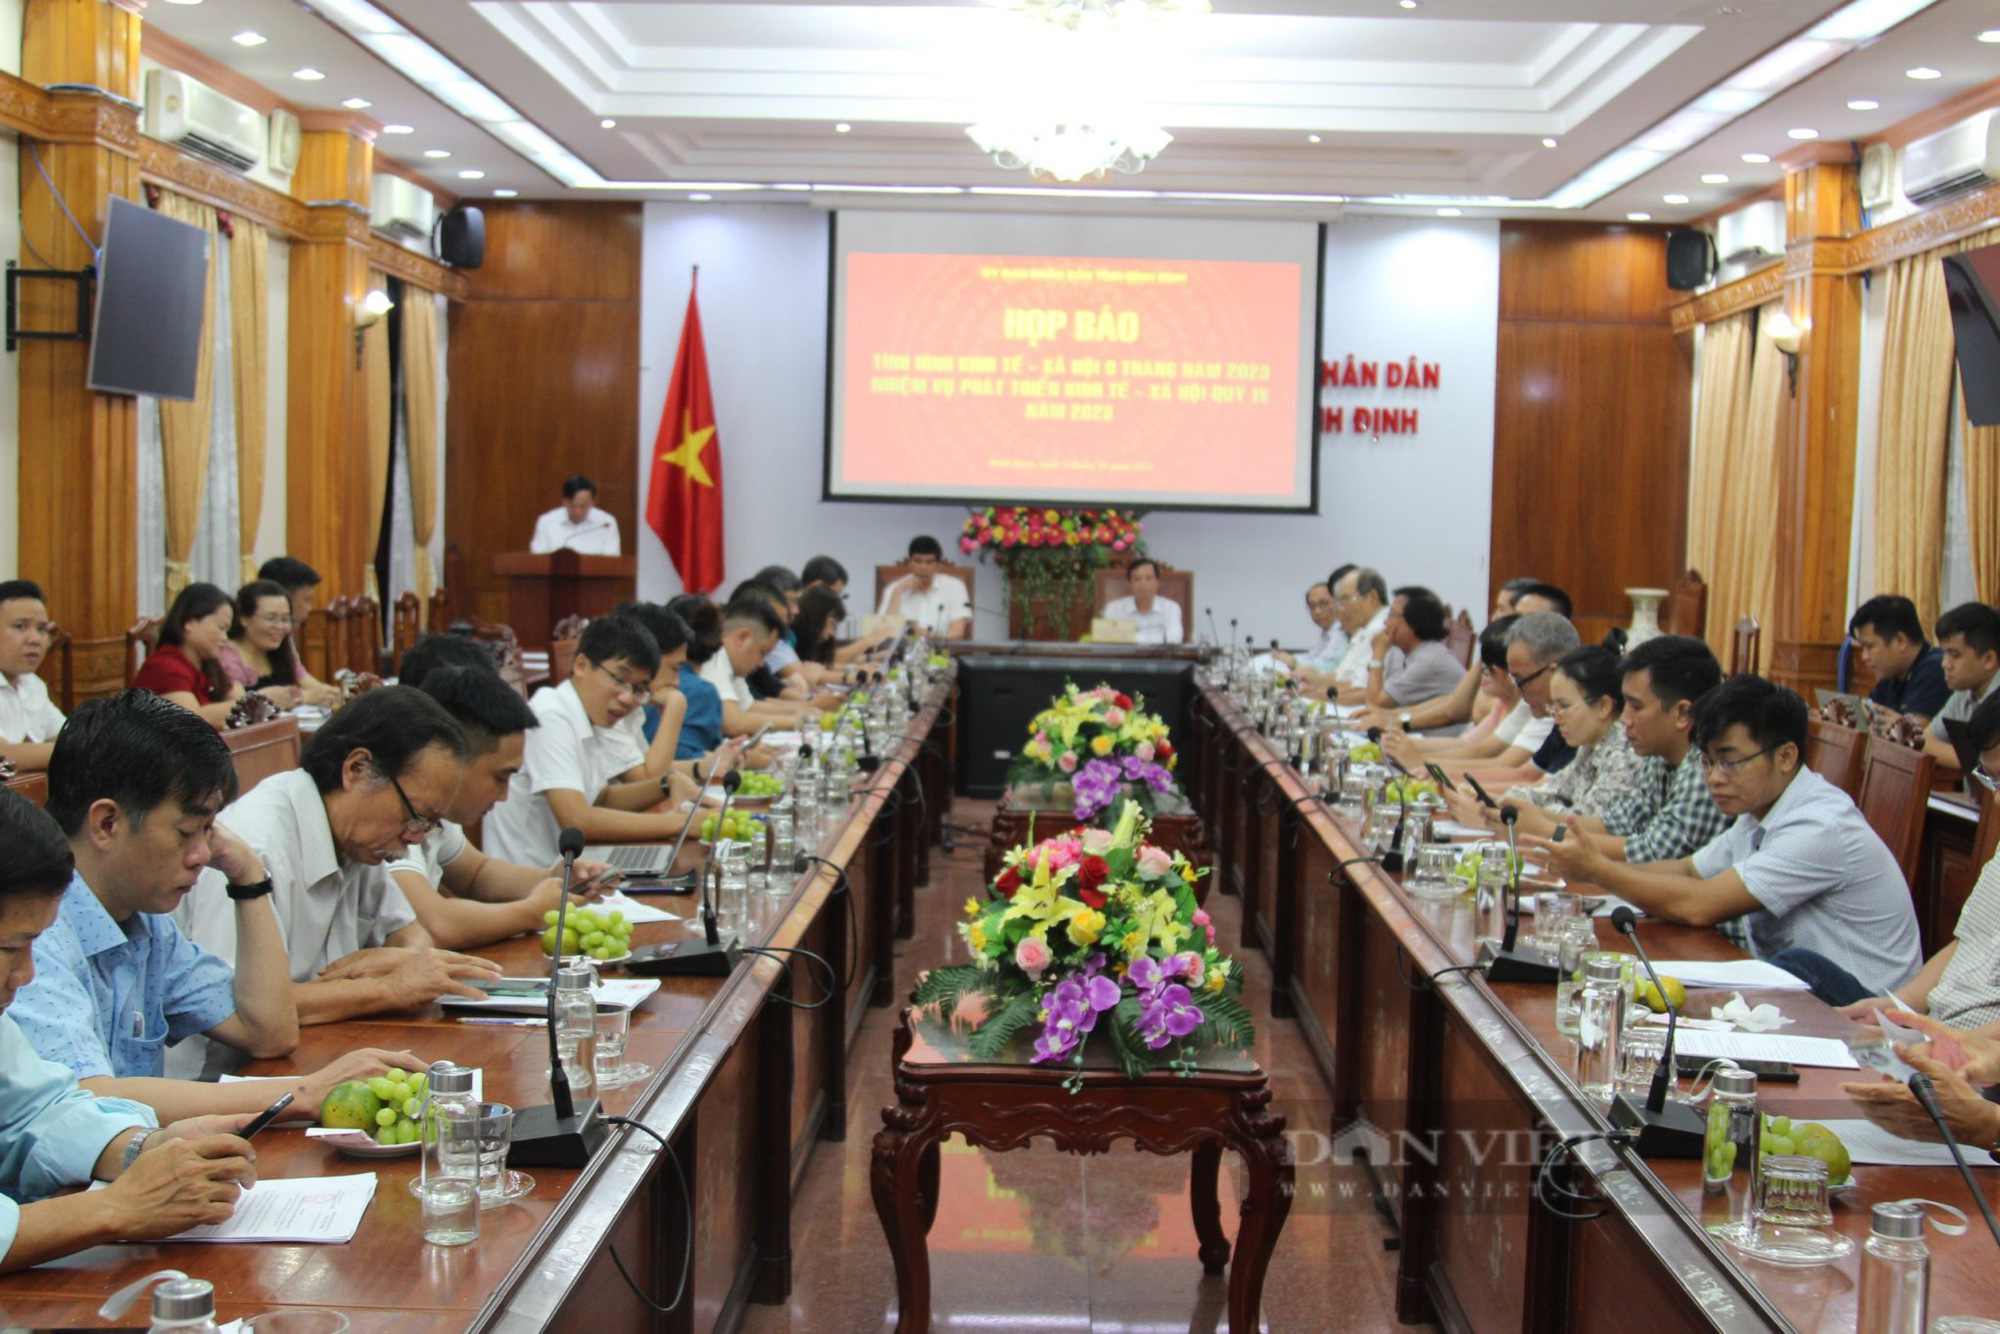 Vợ nguyên Chủ tịch huyện tại Bình Định không chịu trả lại phần &quot;đất vàng&quot; được cấp sai - Ảnh 3.